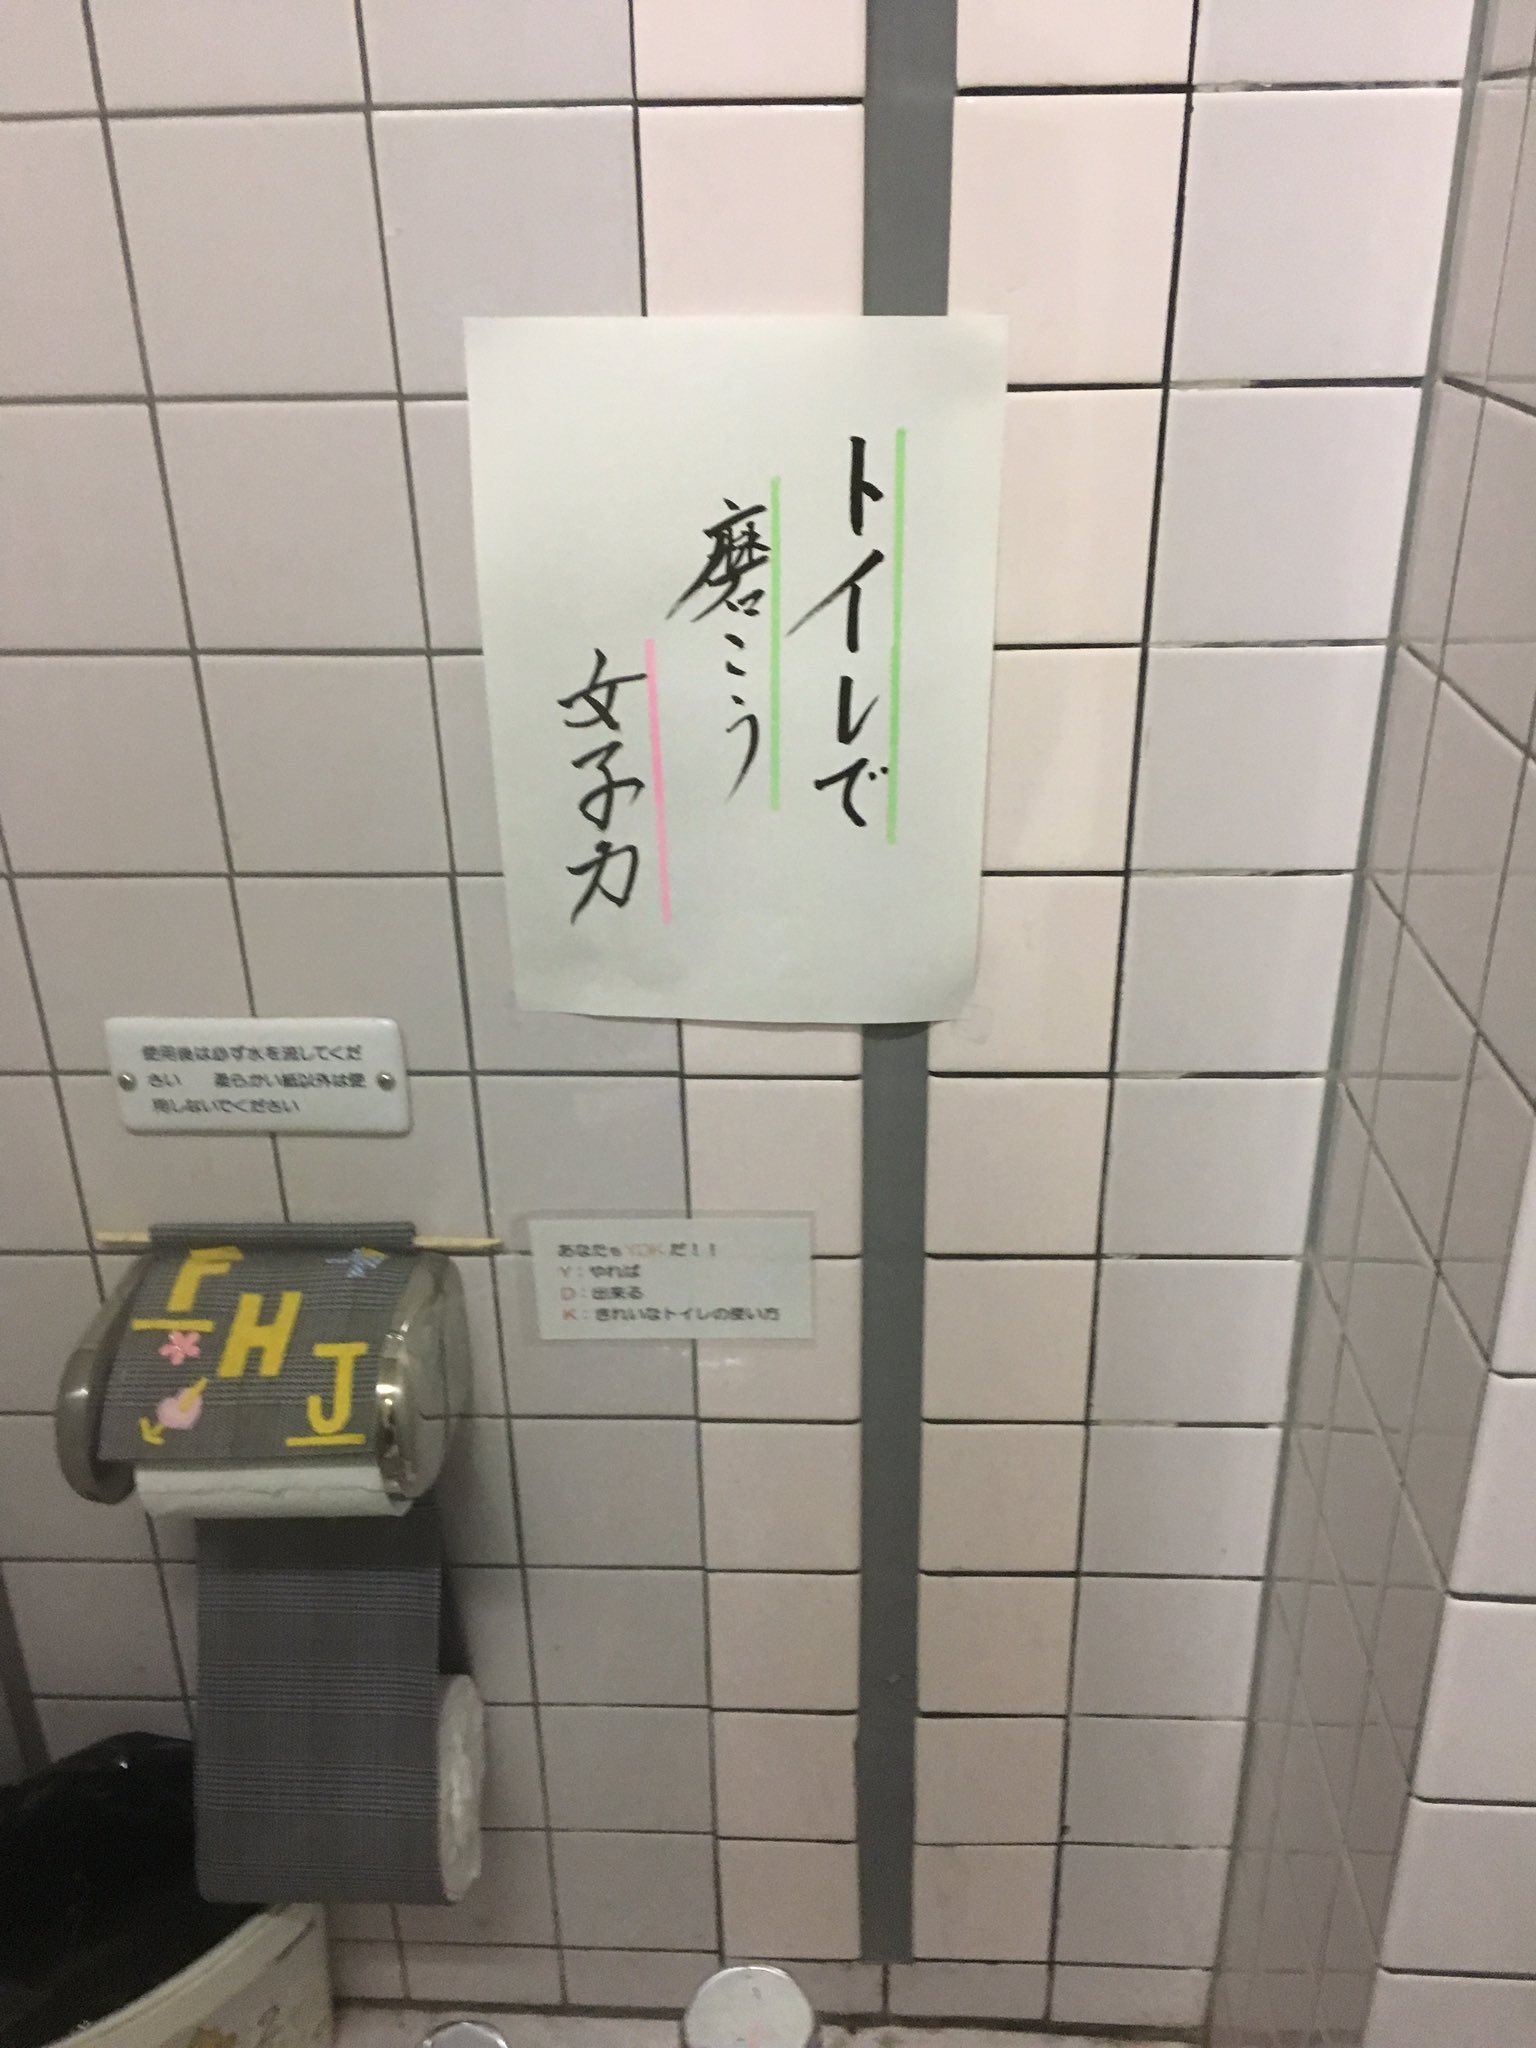 公衆トイレのマナーが悪いのか 誰うまな張り紙が貼ってあるｗ えのげ